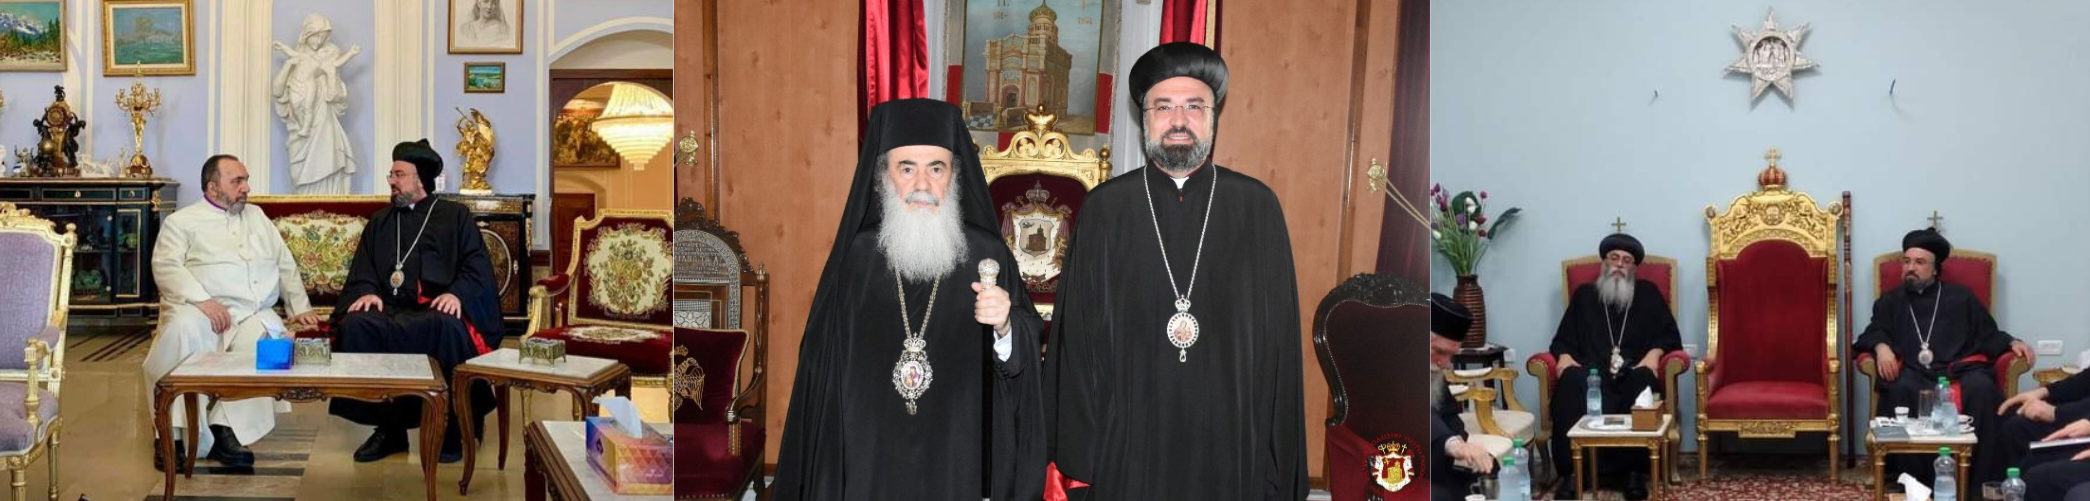 Archbishop Mor Anthimos of Jerusalem Visited Primates of Orthodox Churches in Jerusalem